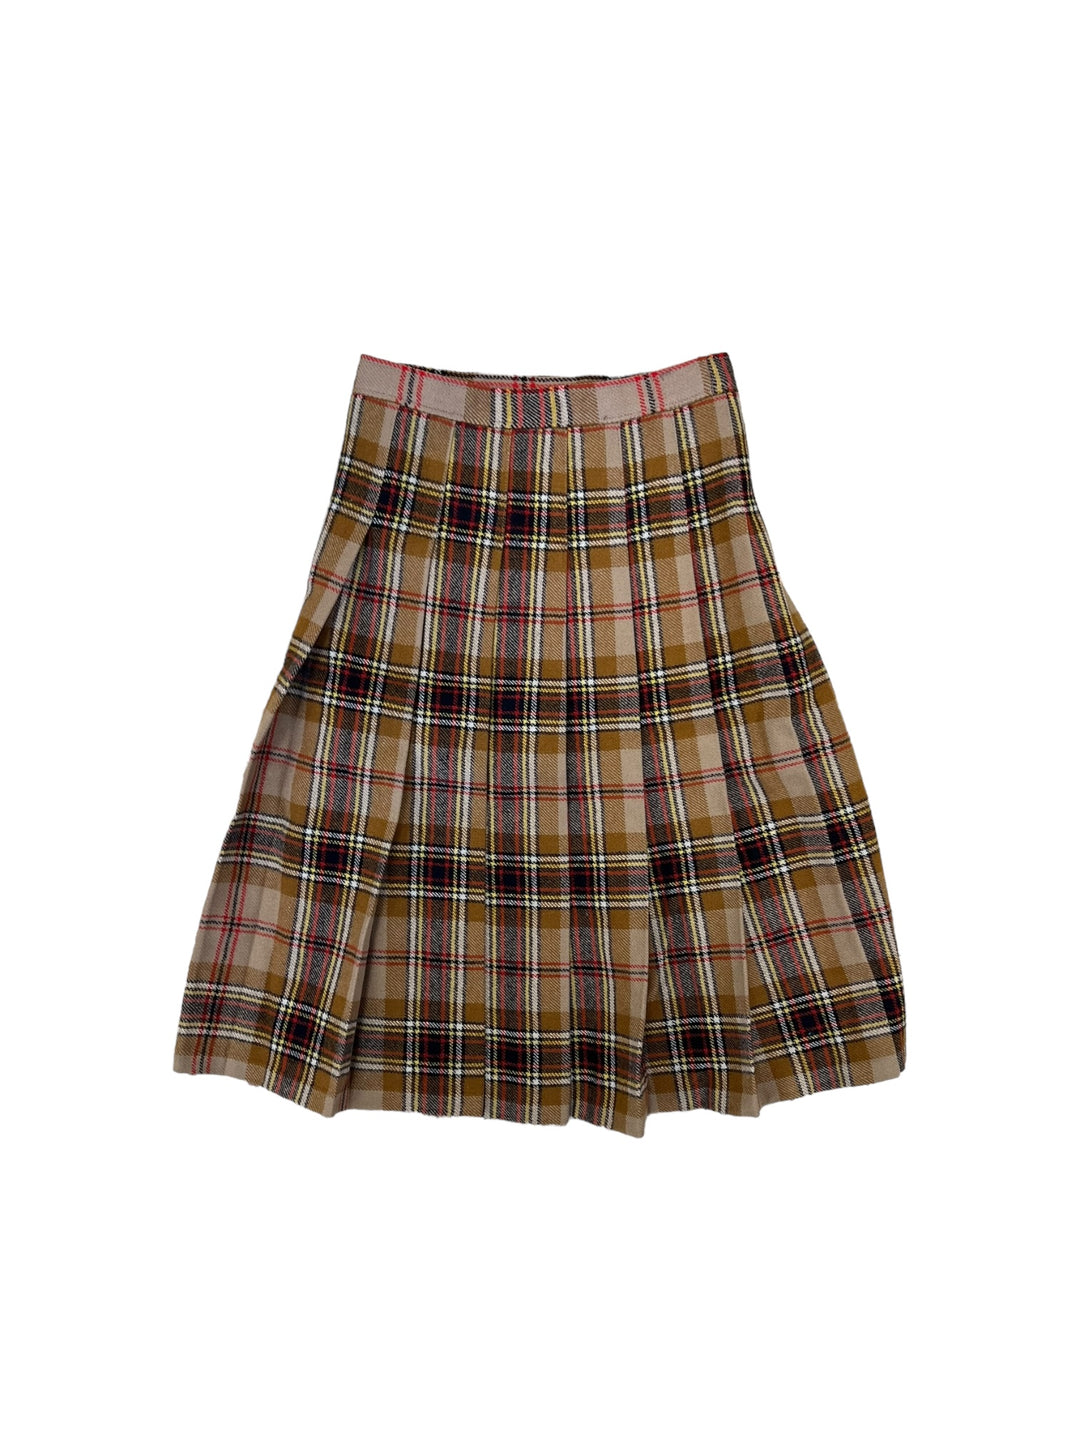 Vintage tartan high waist skirt women’s extra small